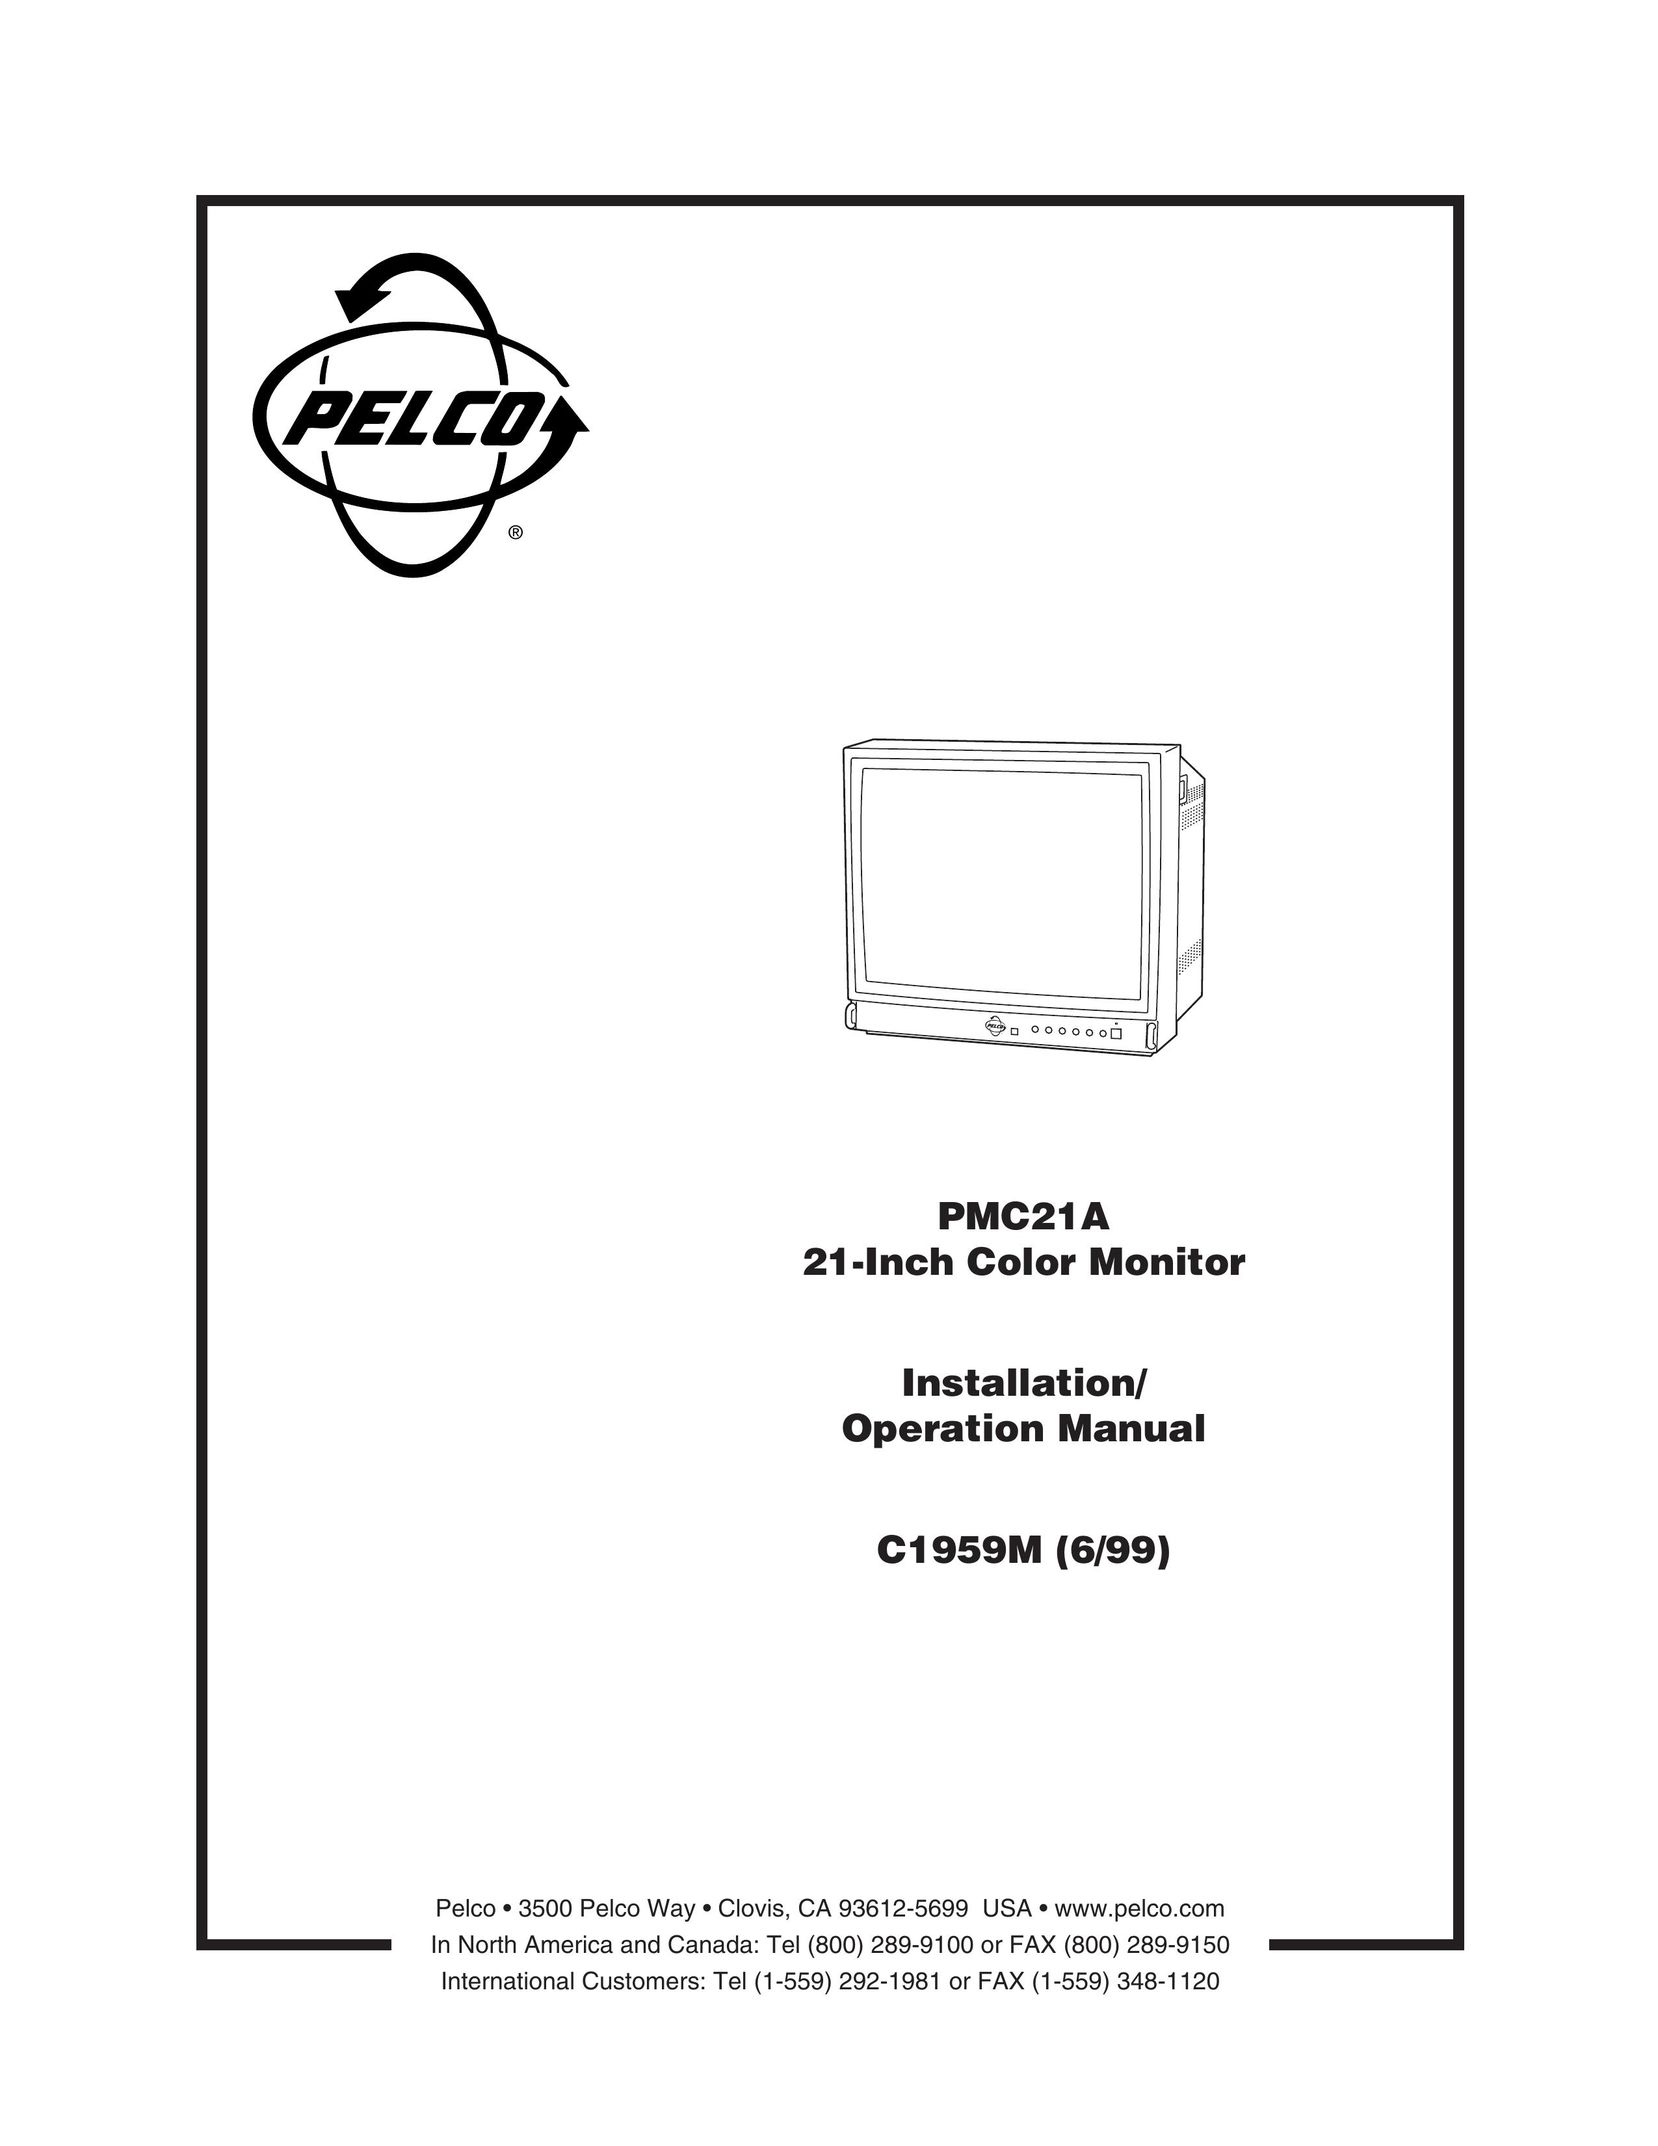 Pelco c1959(6/99) Car Satellite TV System User Manual